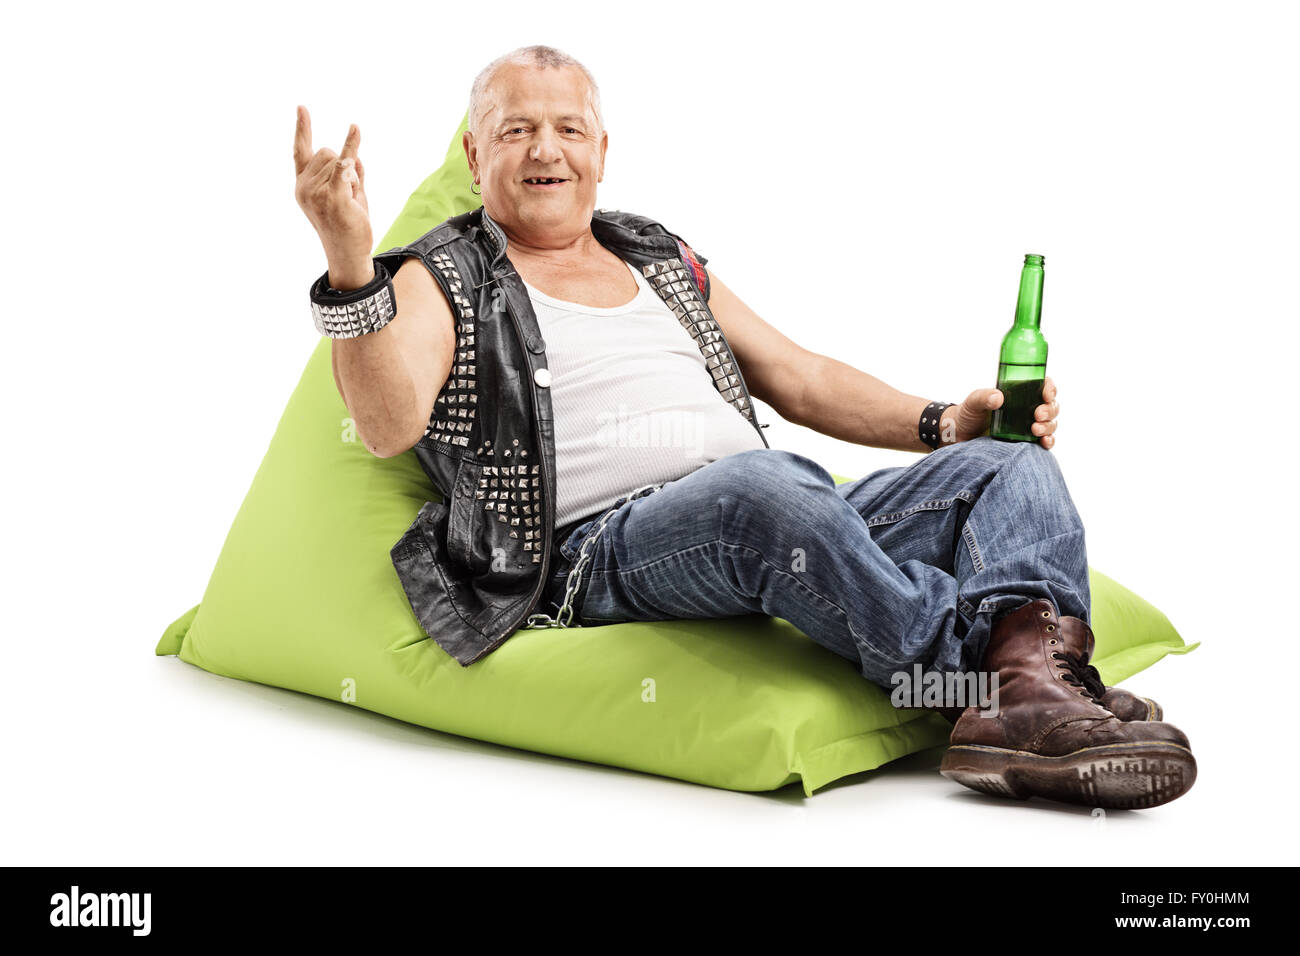 Young punk rocker boire des bières assis sur un pouf poire et faisant un geste de la main de roche isolé sur fond blanc Banque D'Images